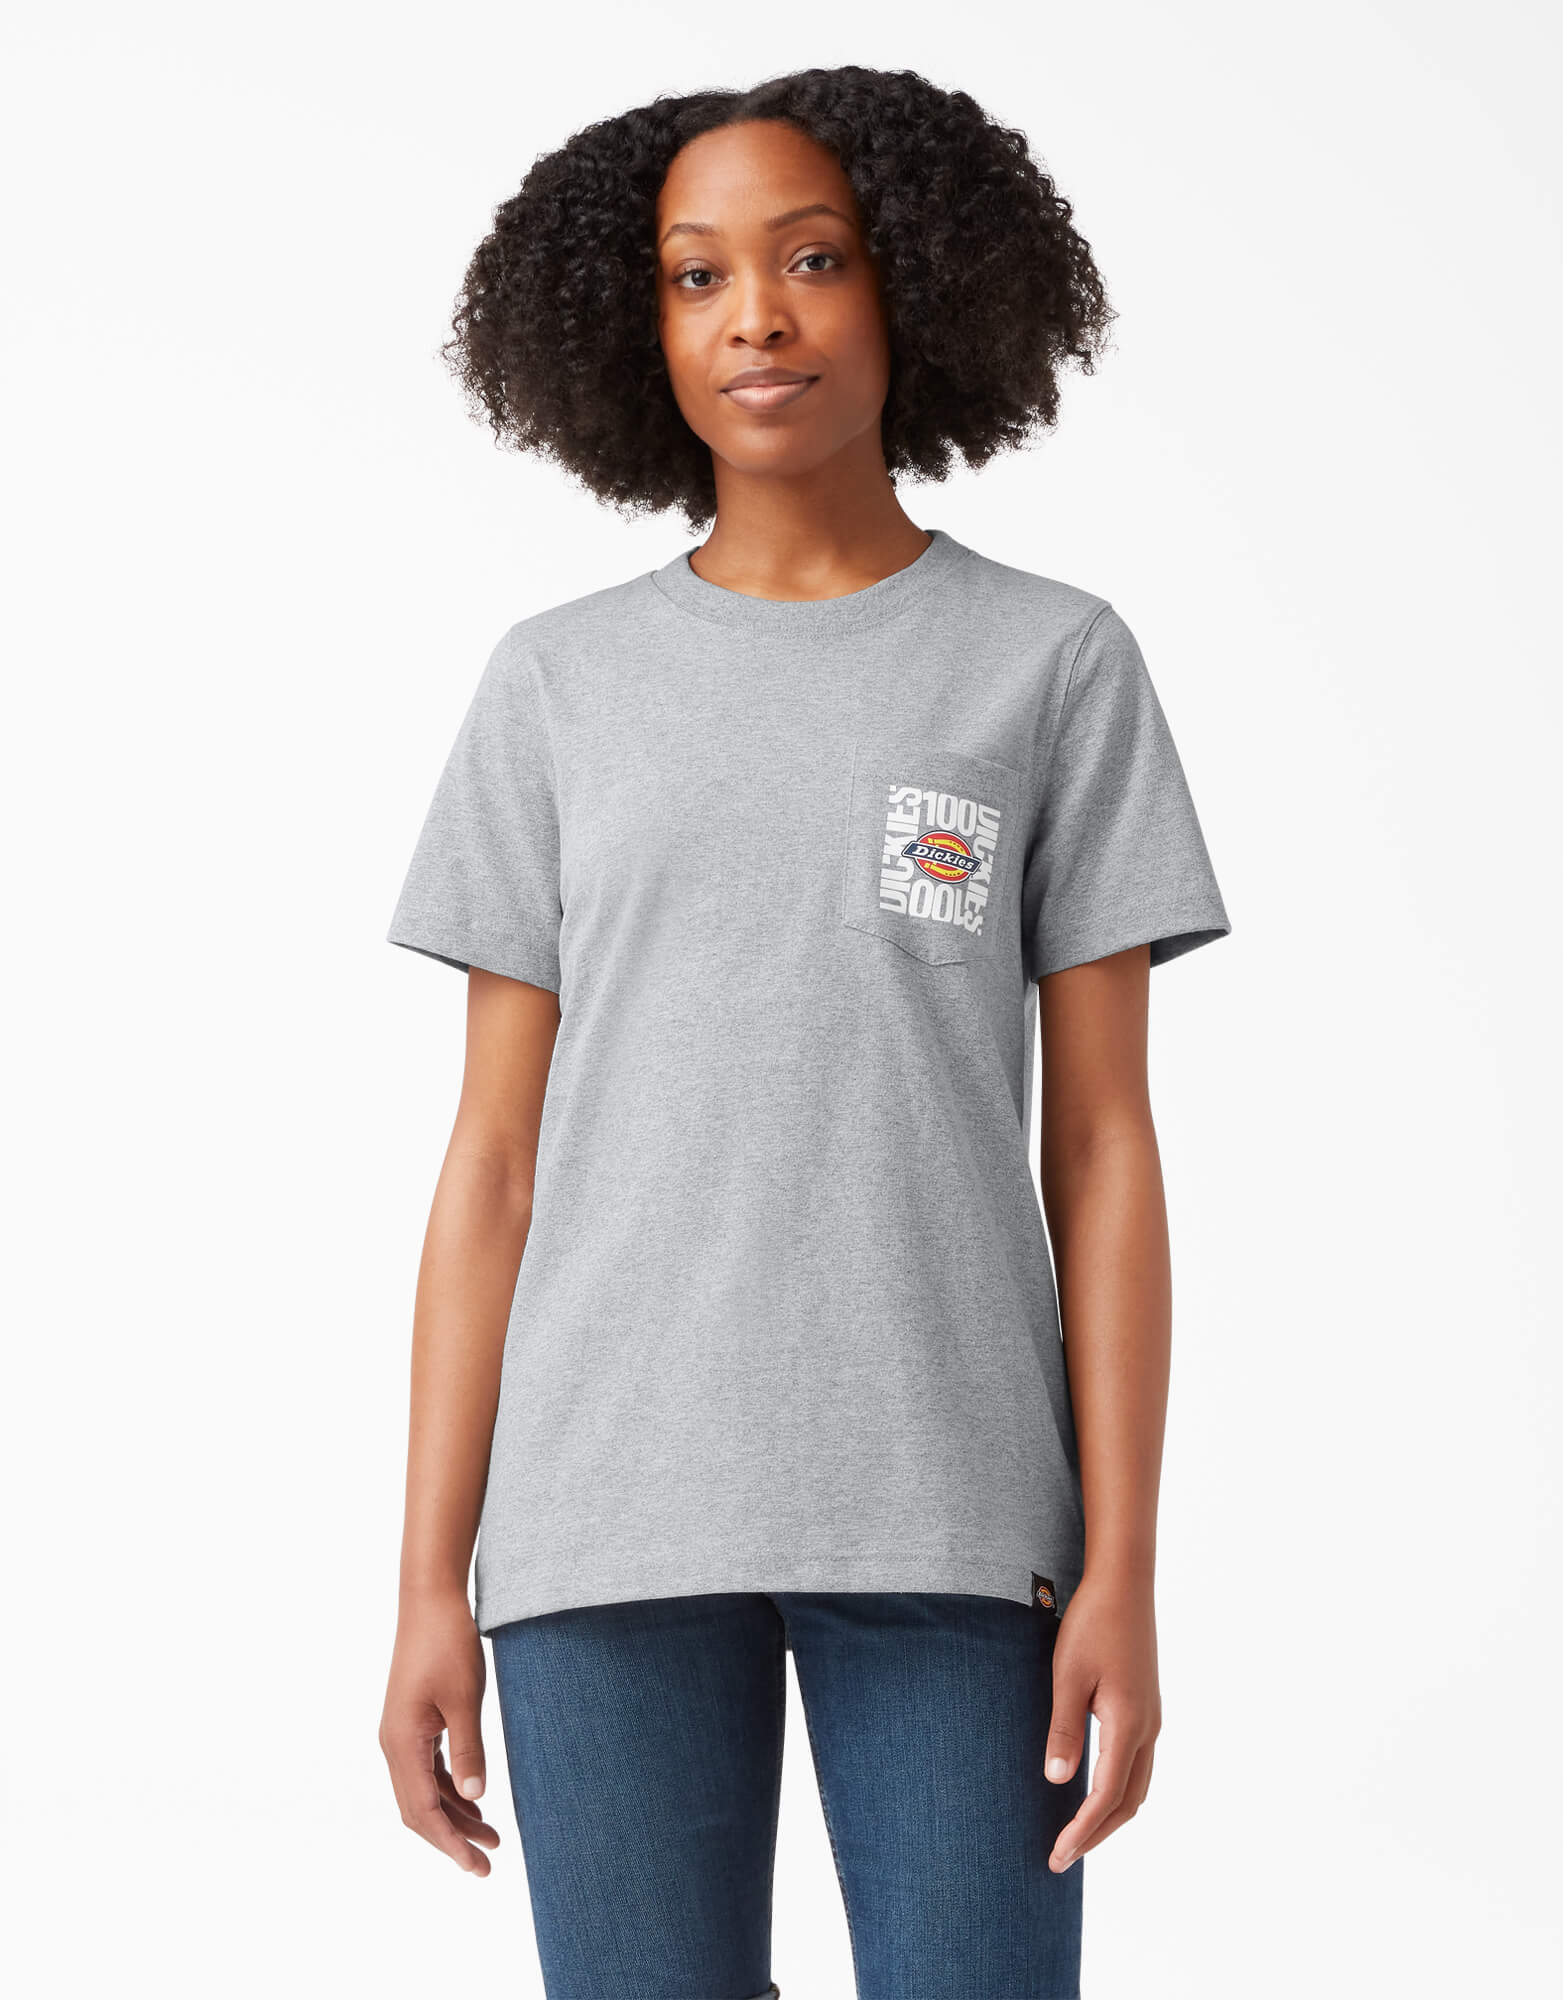 Women's 100 Year Graphic T-Shirt